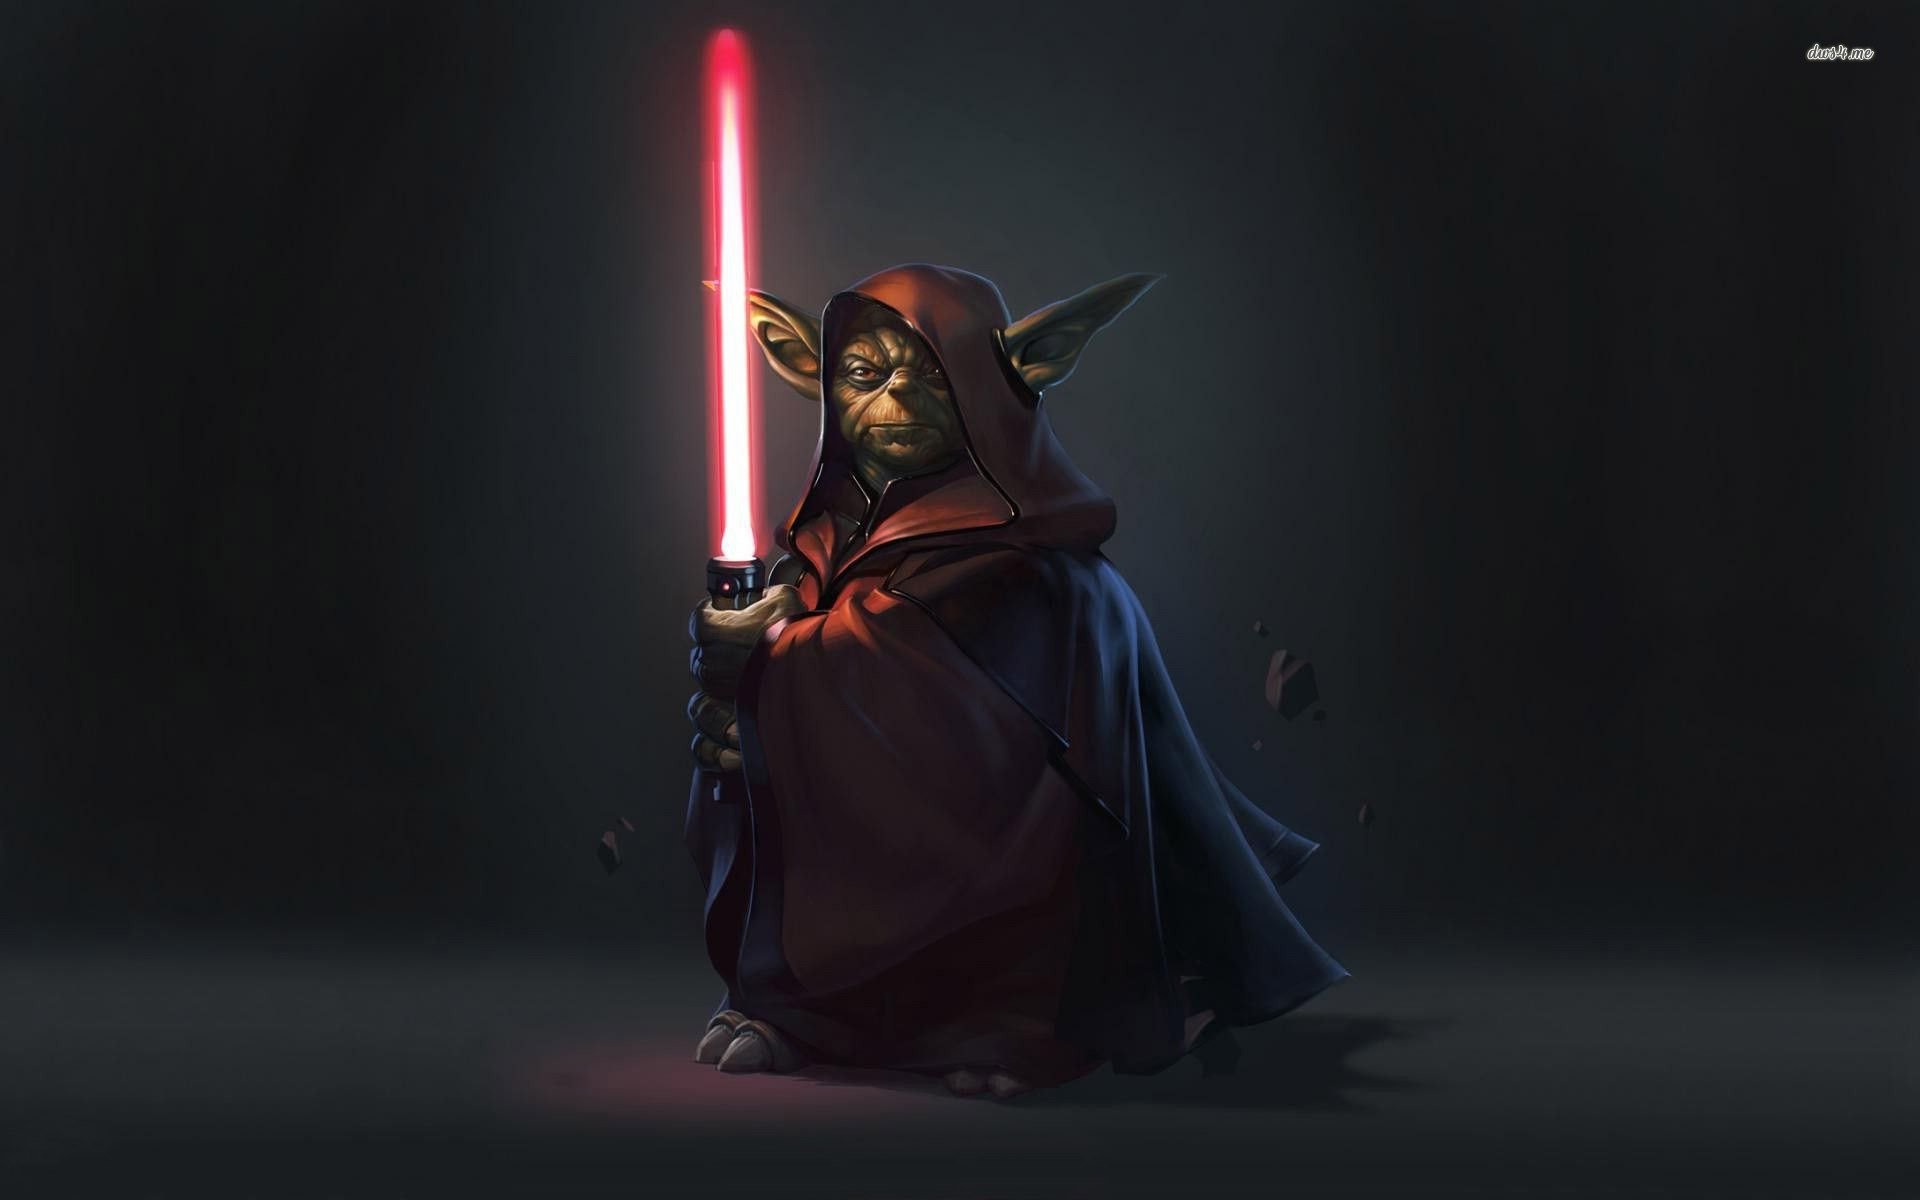 1920x1200 Yoda On The Dark Side. SHARE. TAGS: Yoda Star Wars